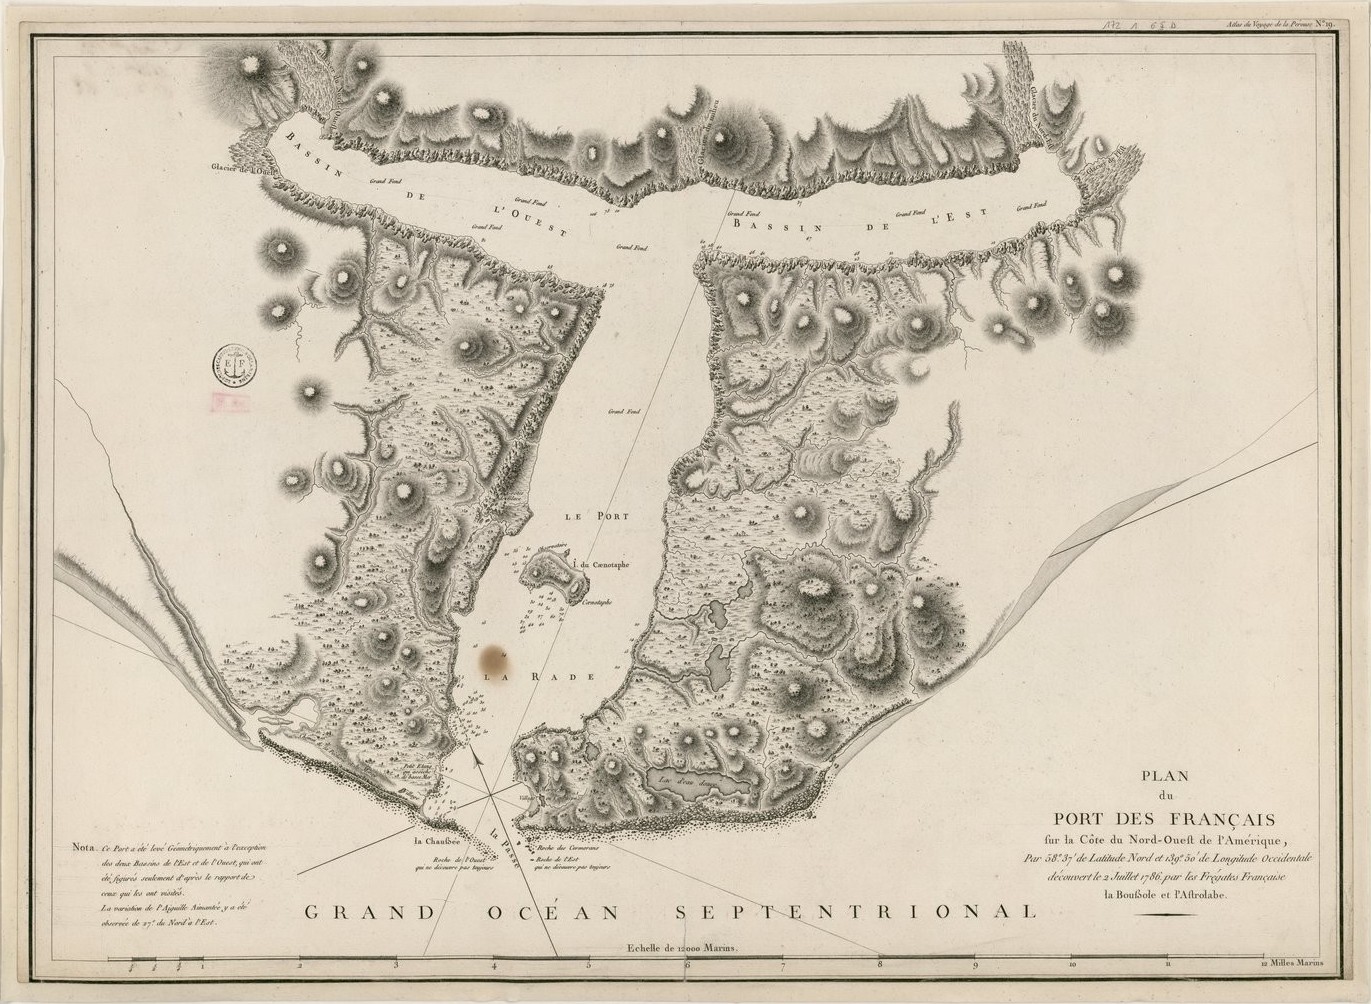 Plan du Port des Français sur la côte du Nord-Ouest de l'Amérique